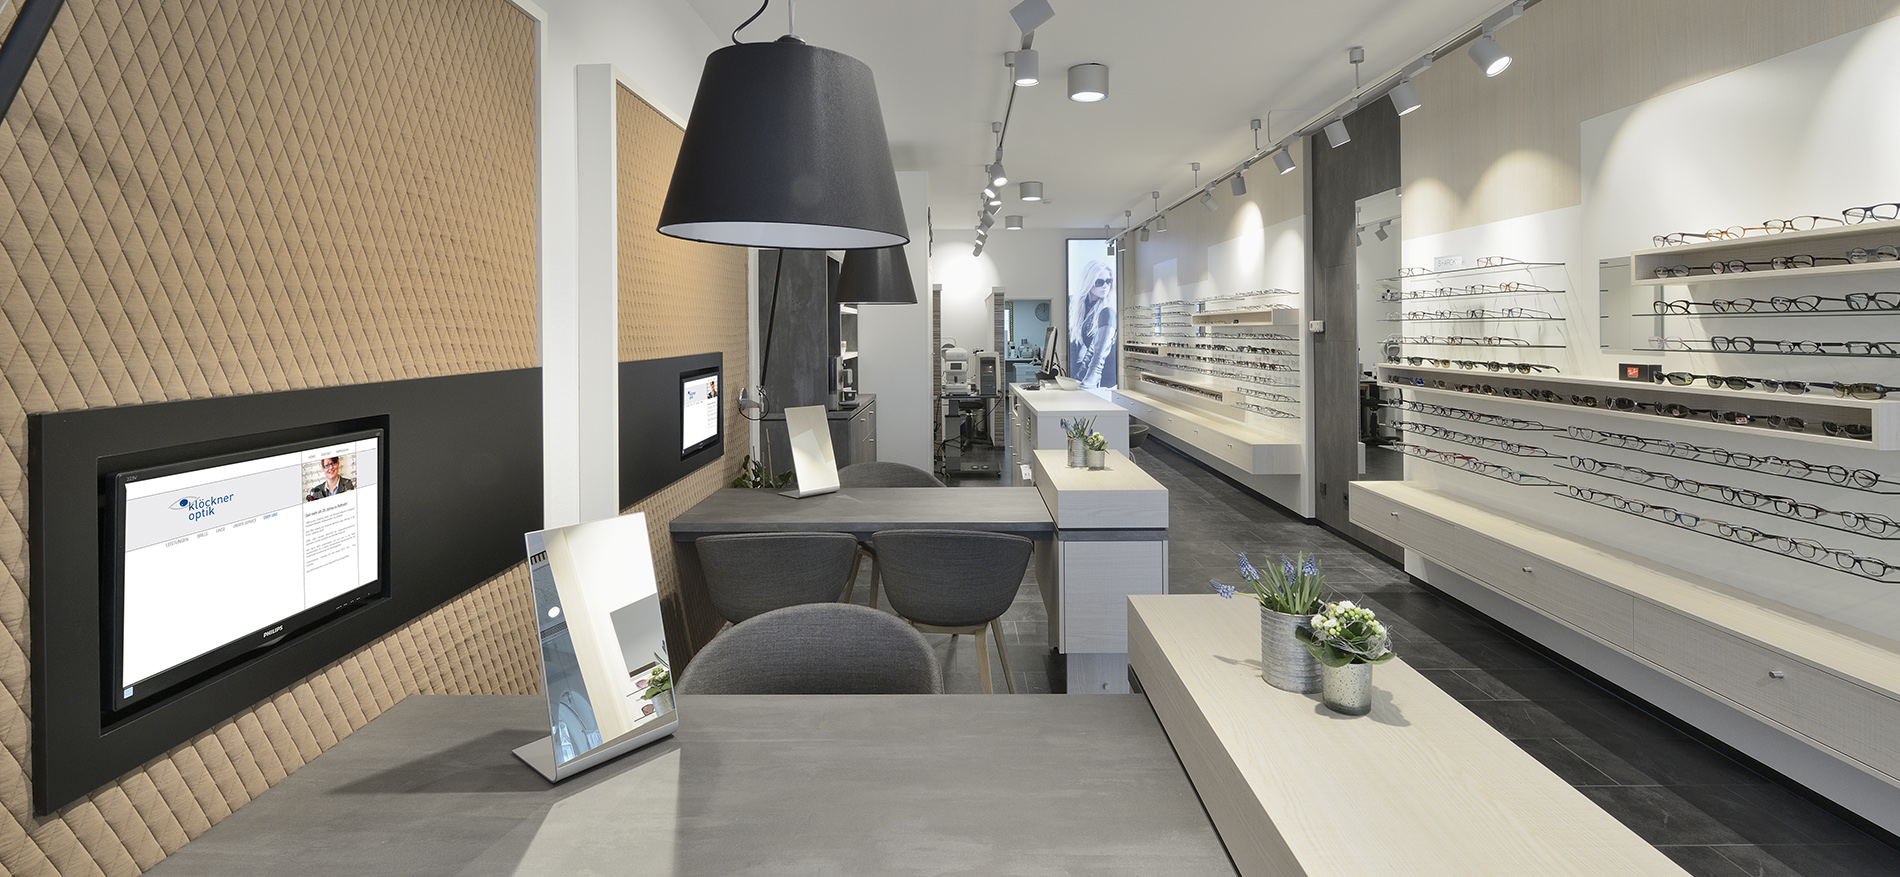 Klöckner Optik fully renovated shop interior - 